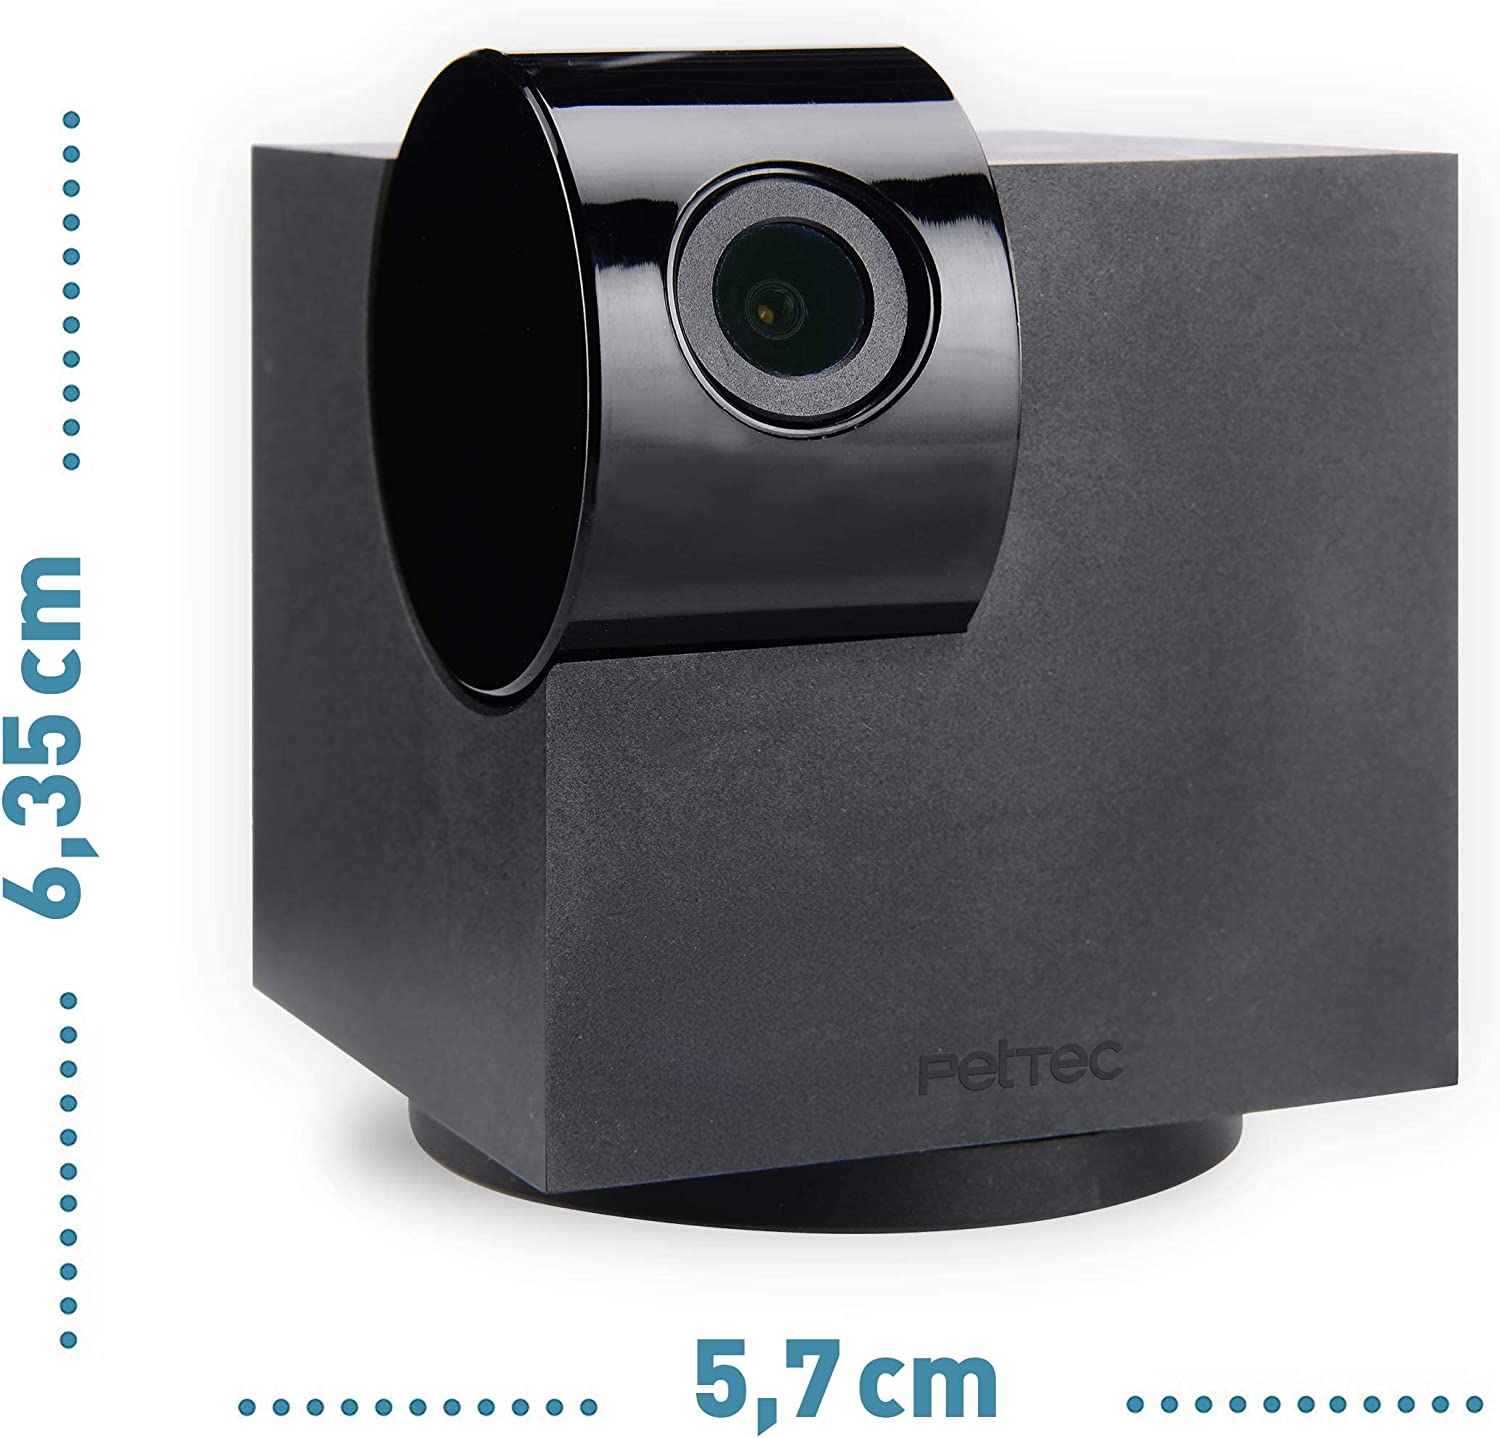 PetTec Cam 360°